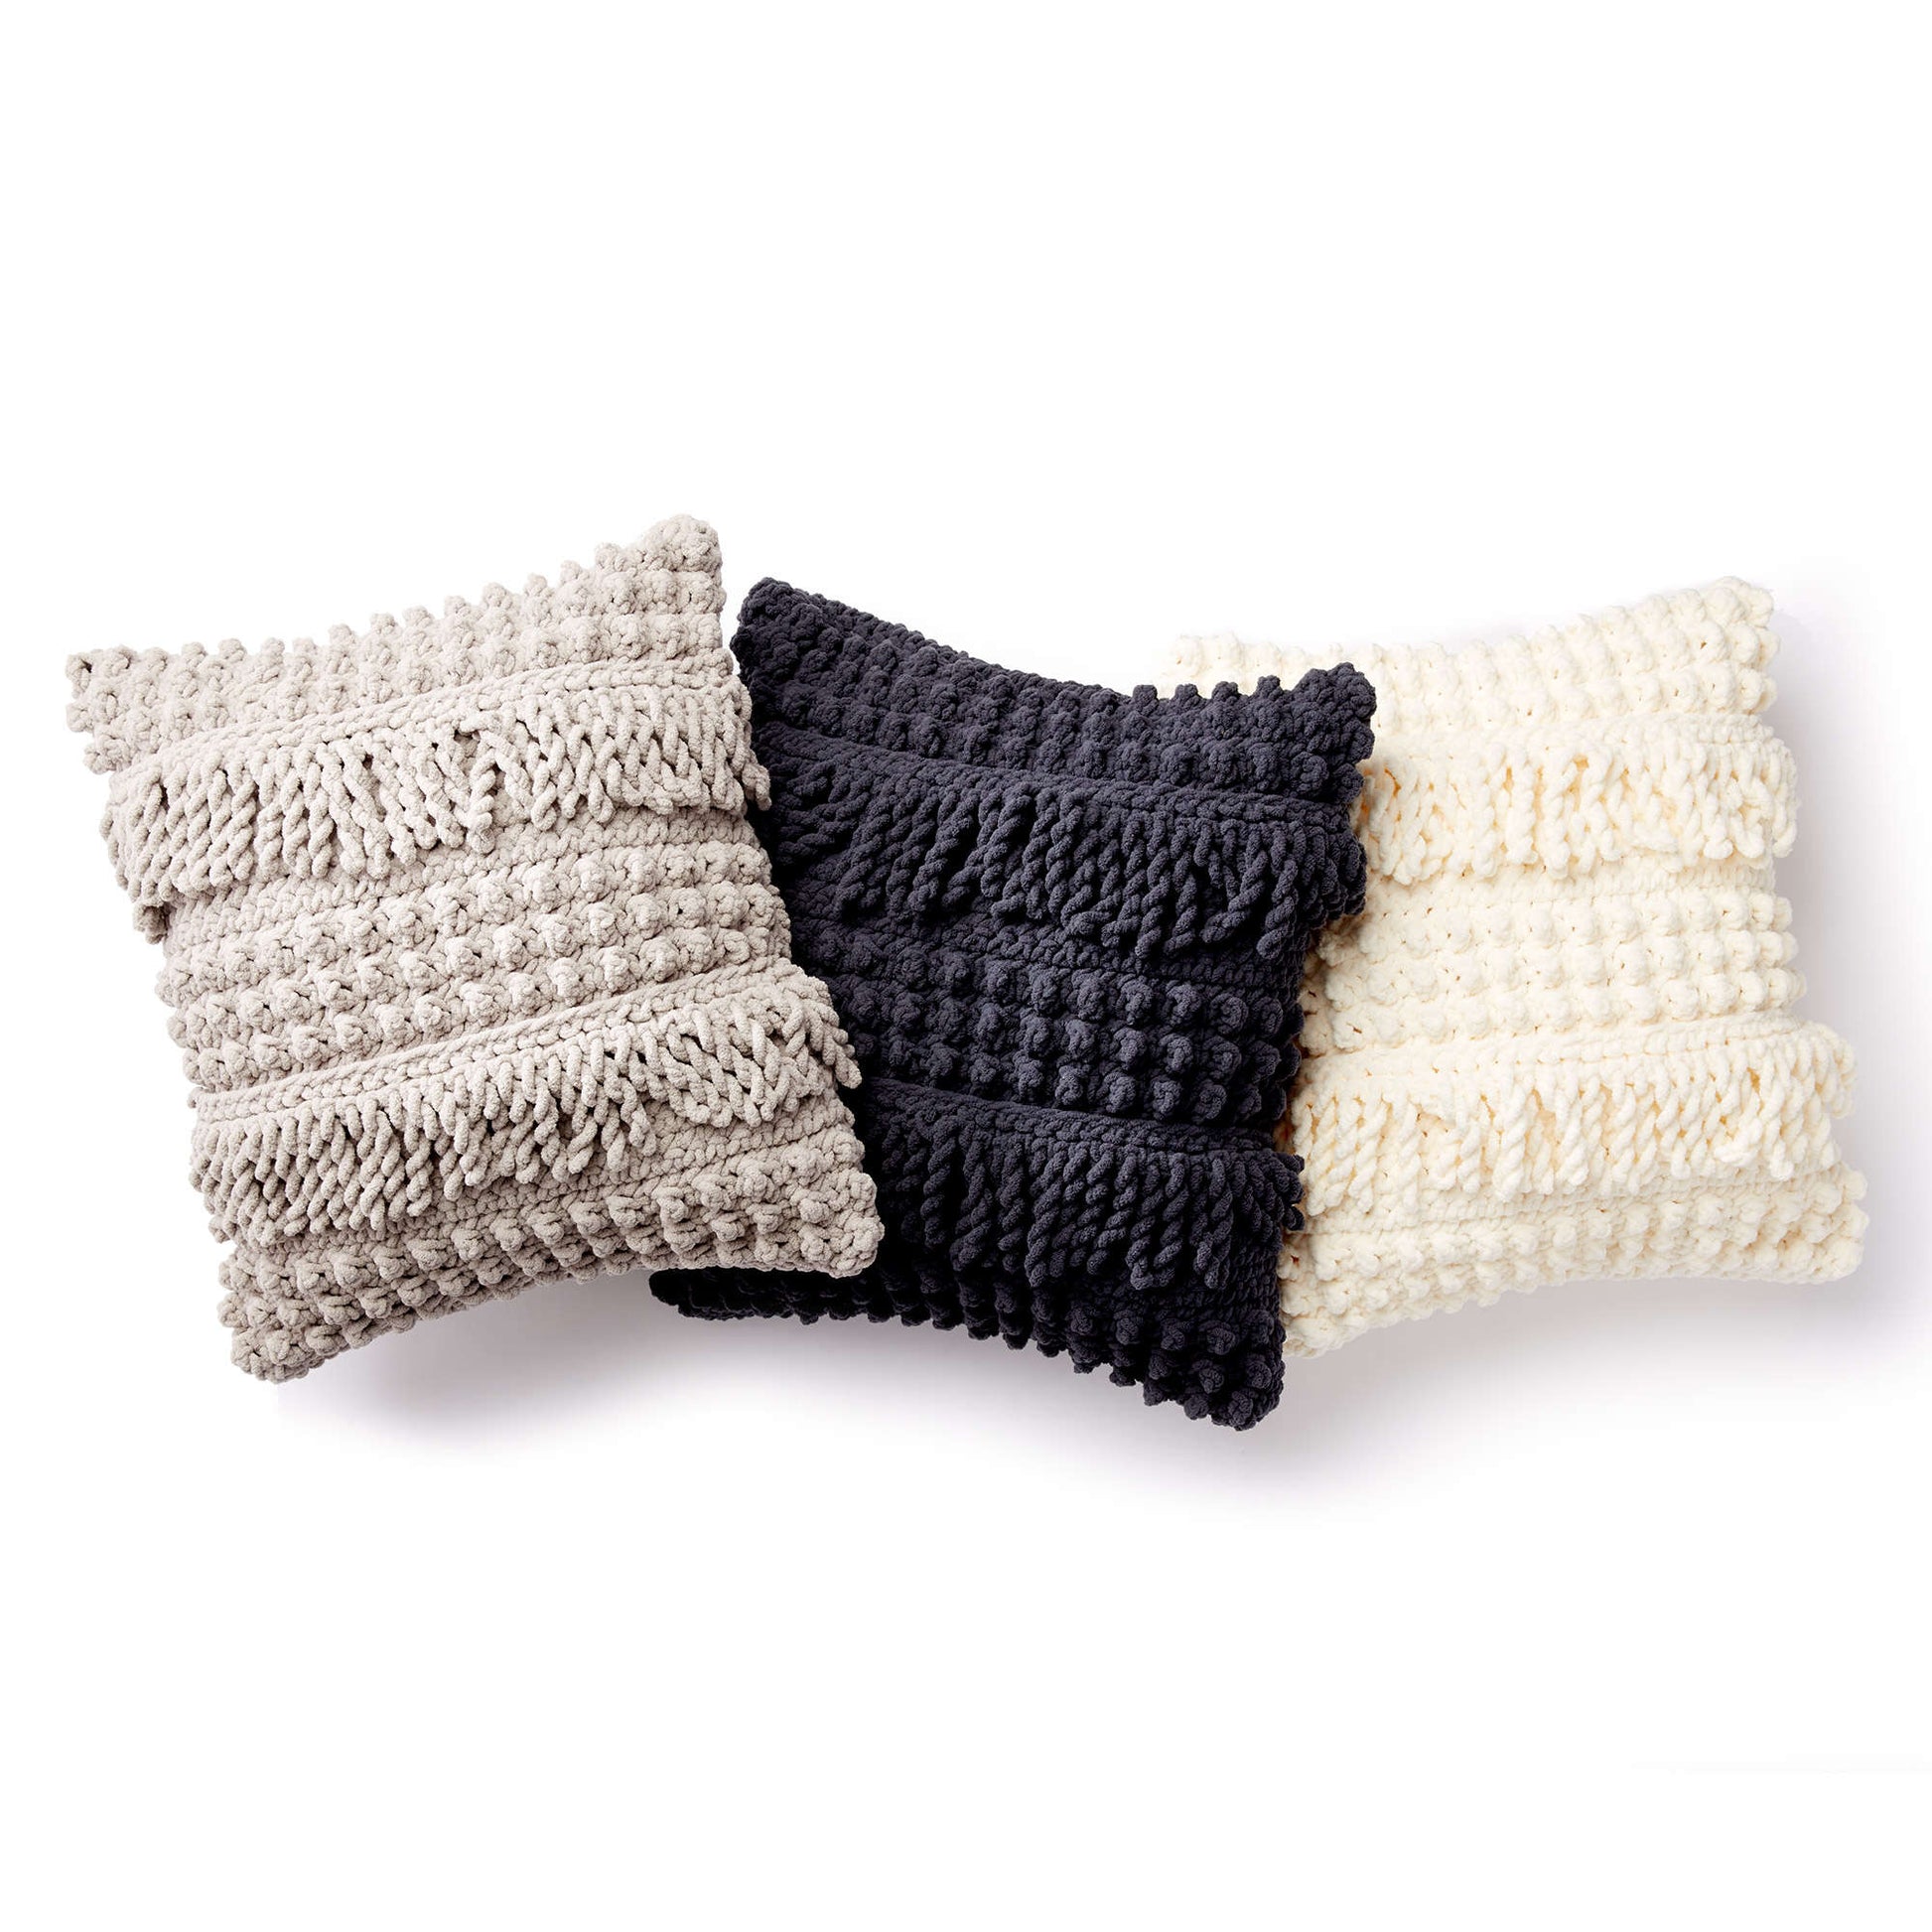 Free Bernat Bobble And Fringe Crochet Pillow Pattern